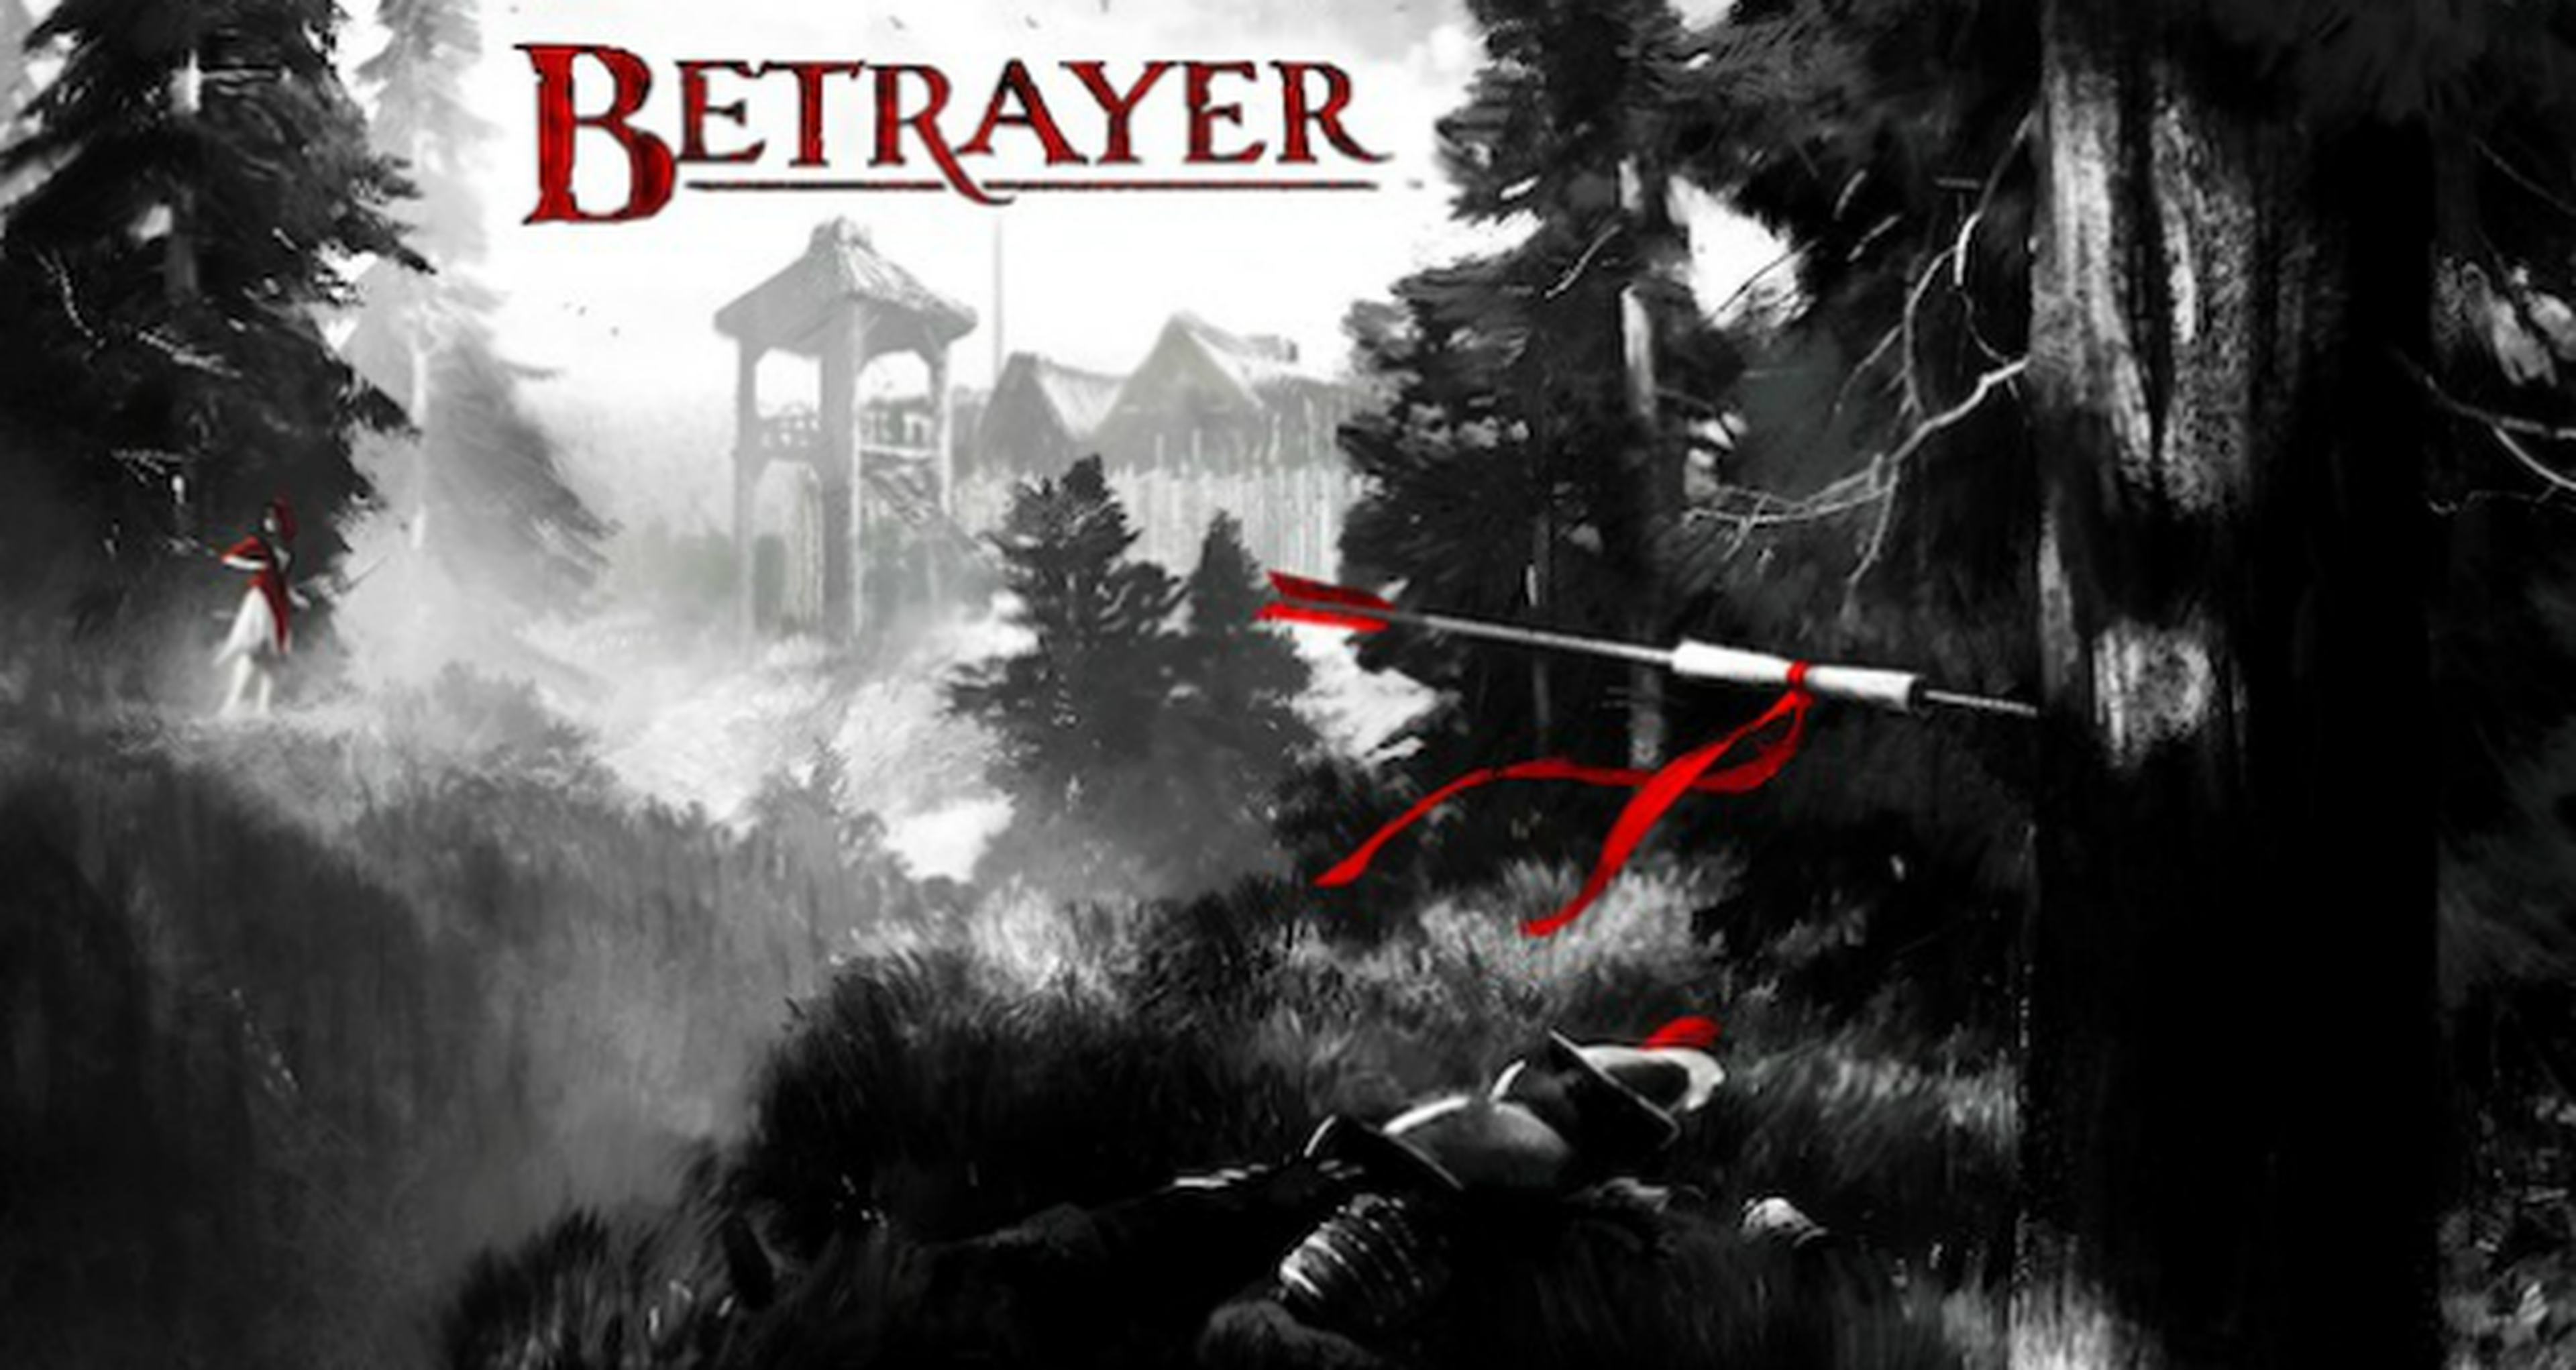 Betrayer fija el 24 de marzo como fecha de su lanzamiento